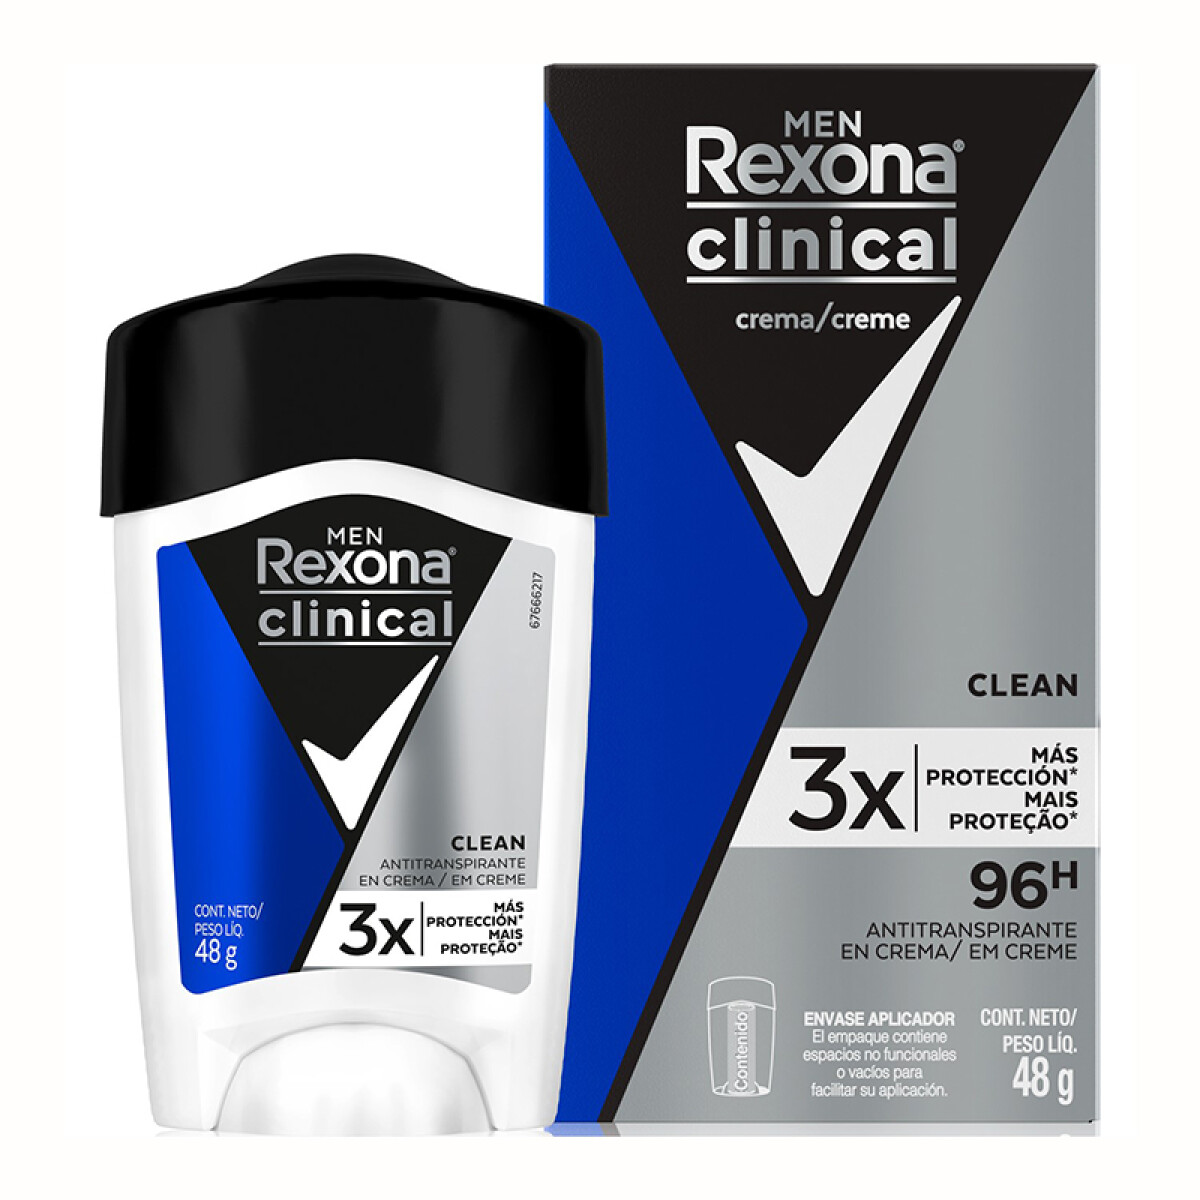 Rexona Clinical antitranspirante - Clean en barra 